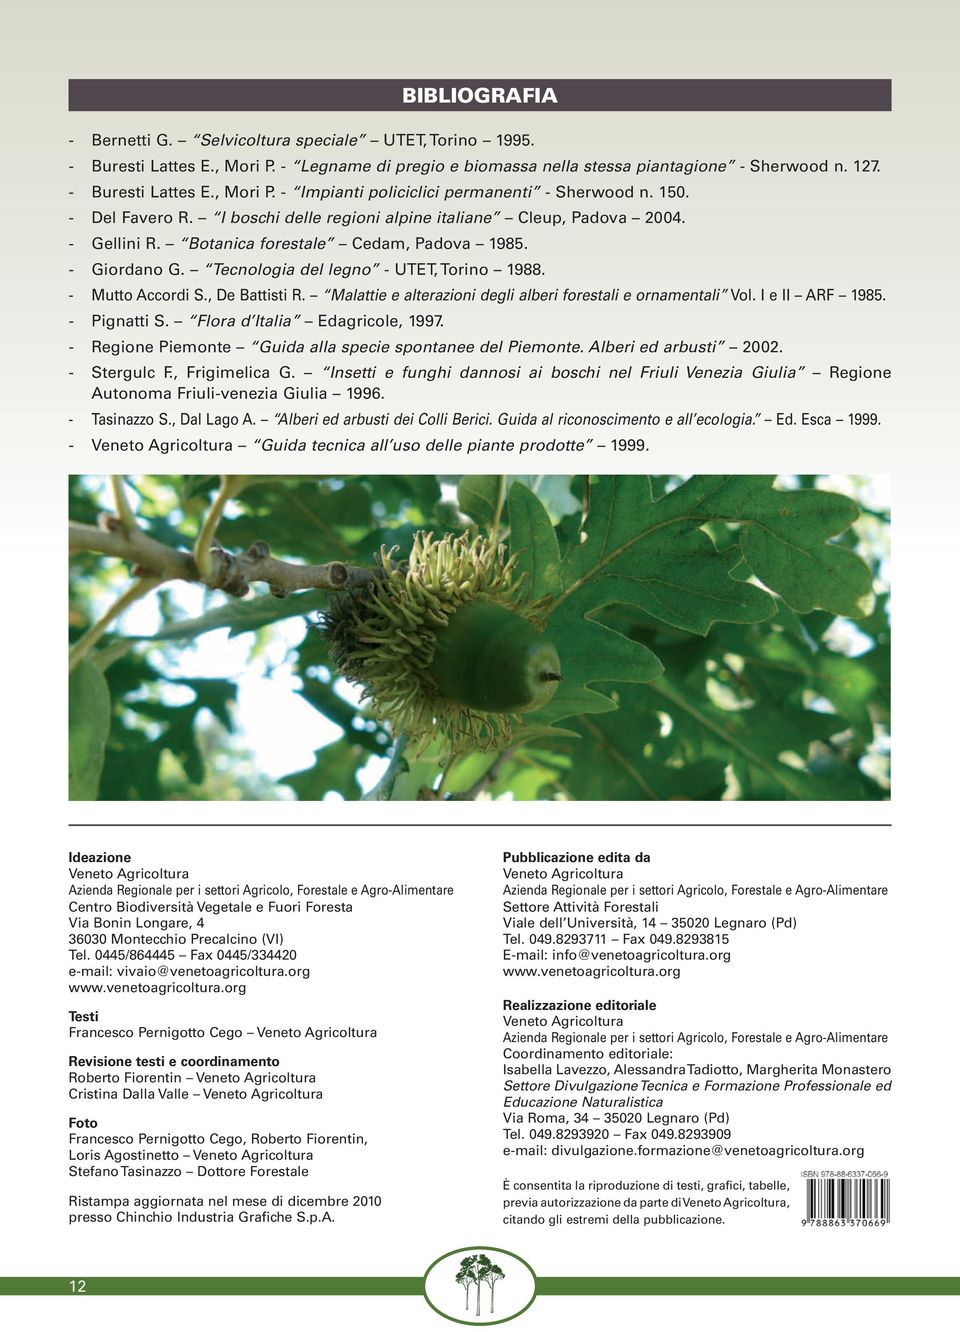 - Mutto Accordi S., De Battisti R. Malattie e alterazioni degli alberi forestali e ornamentali Vol. I e II ARF 1985. - Pignatti S. Flora d Italia Edagricole, 1997.